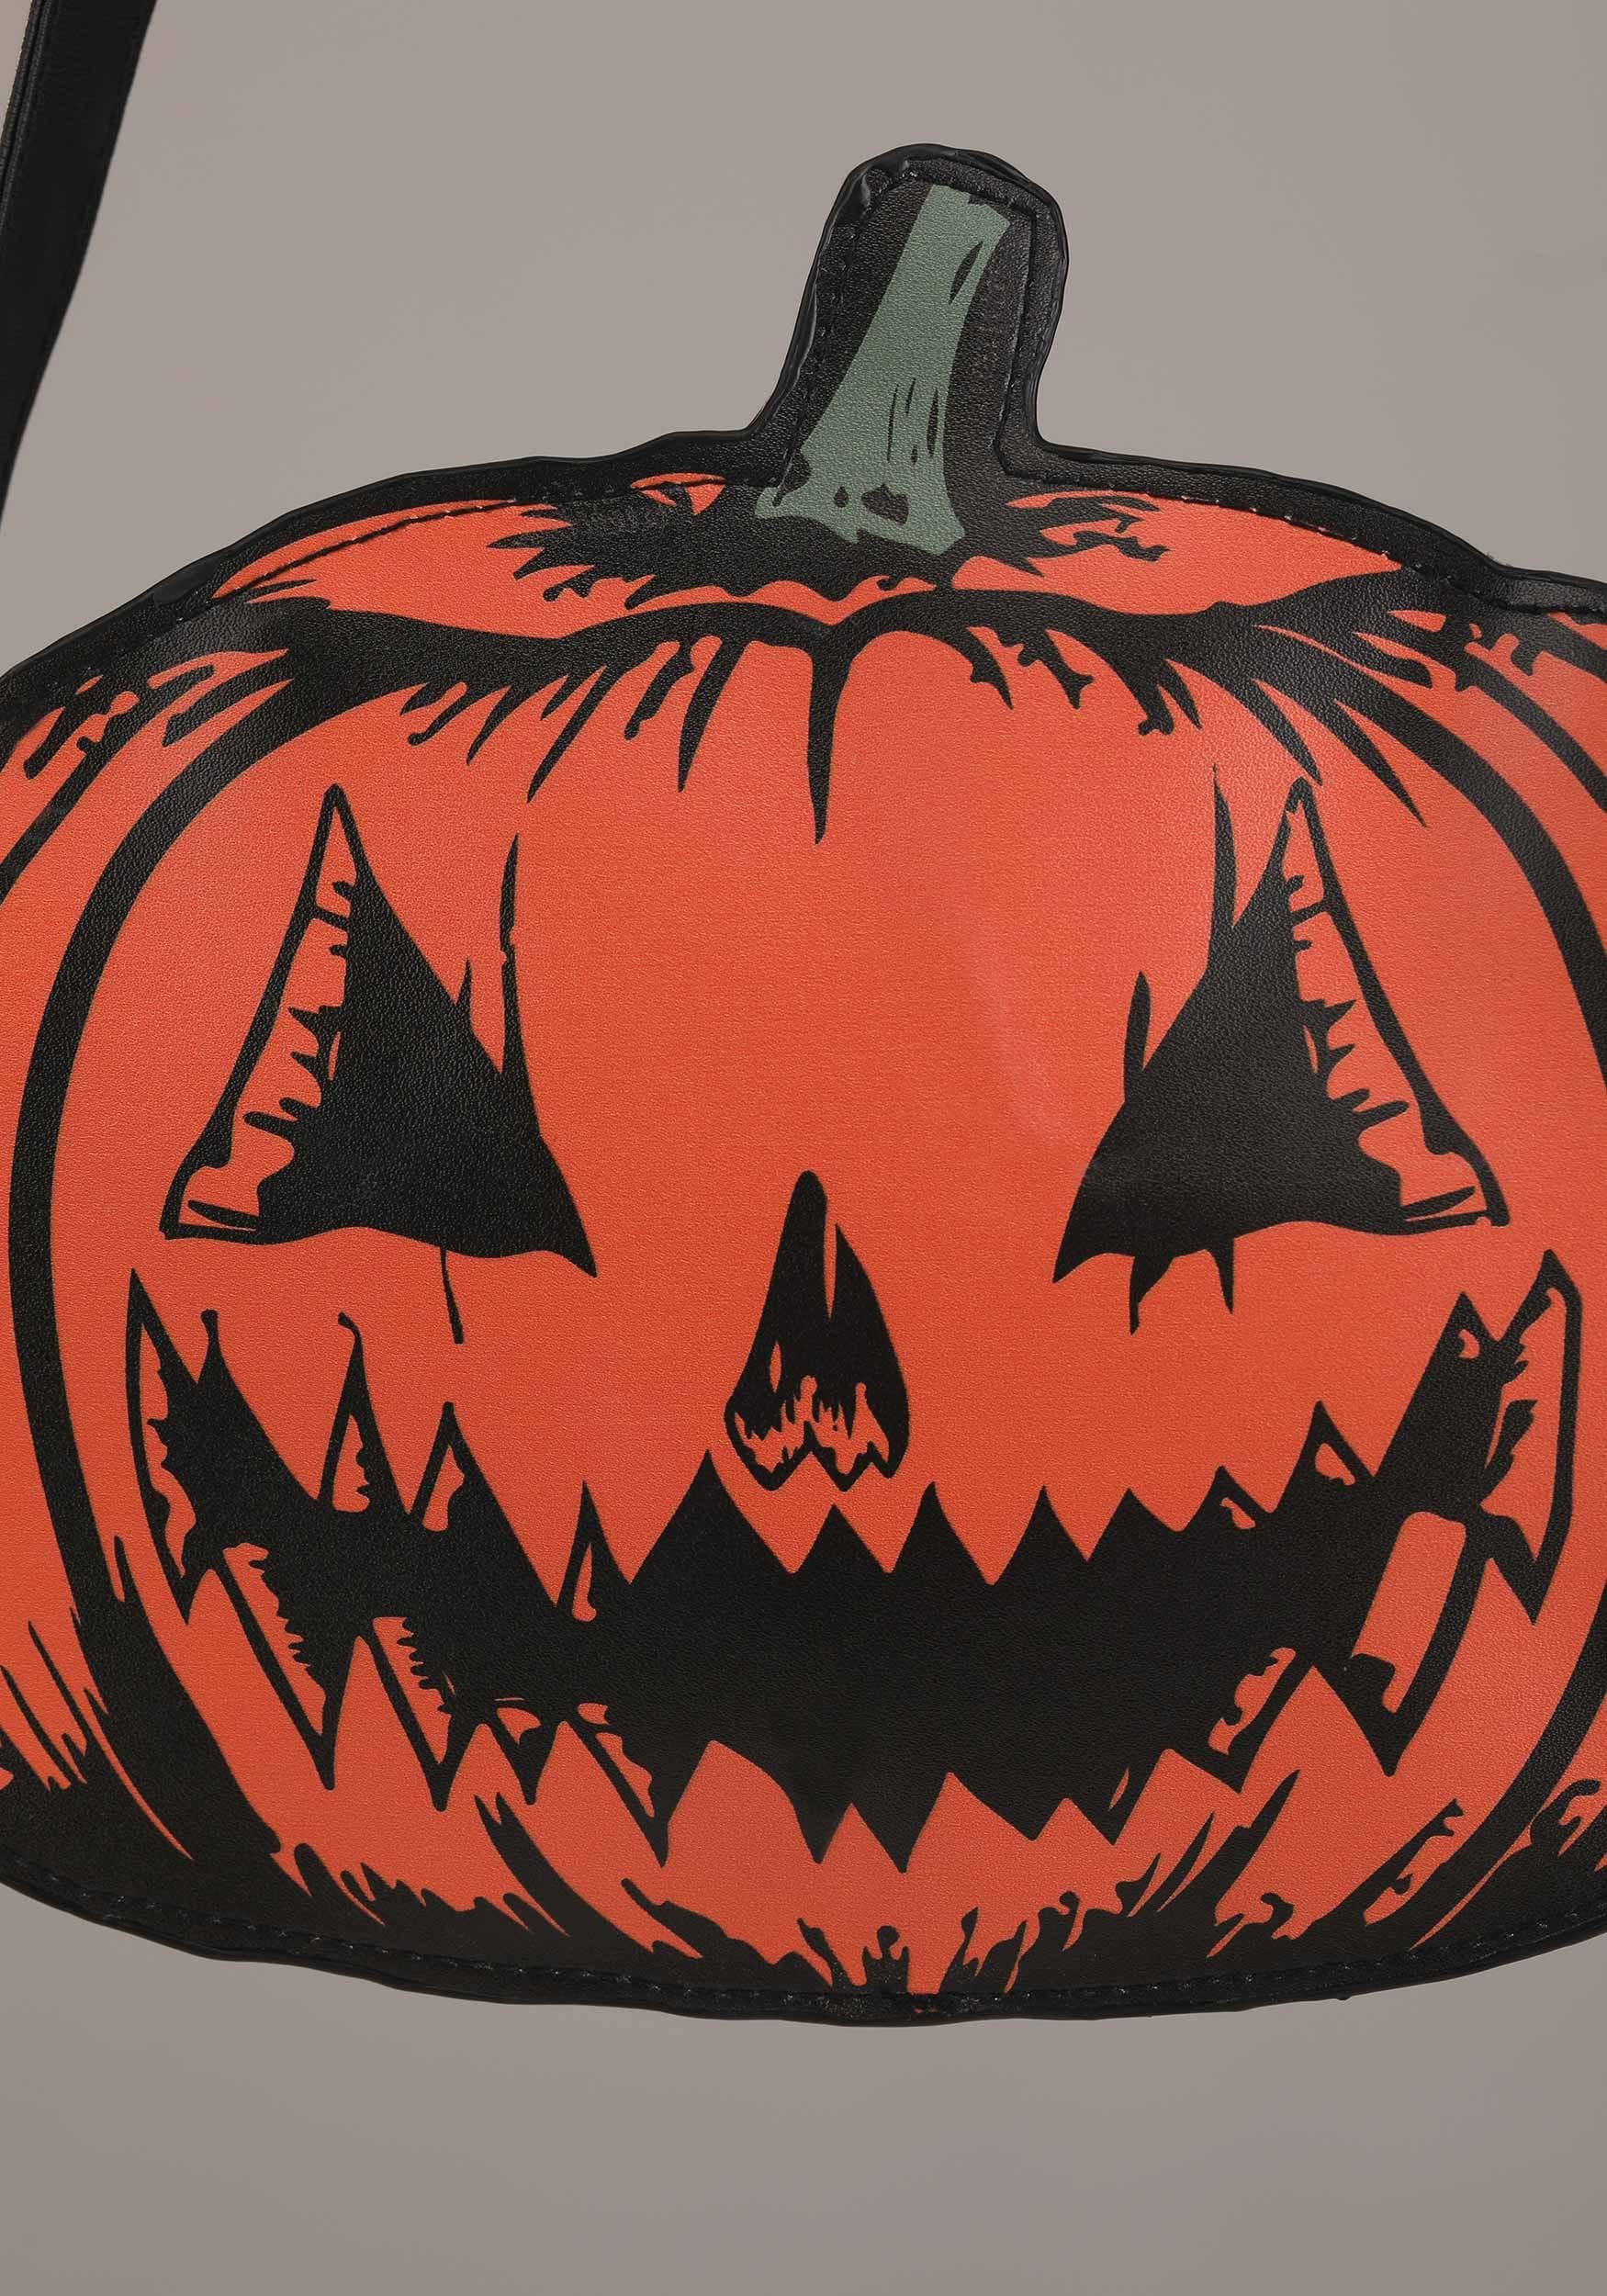 Shein White Pumpkin Jack-o'-Lantern Goth Punk Halloween 6” Round Purse Bag